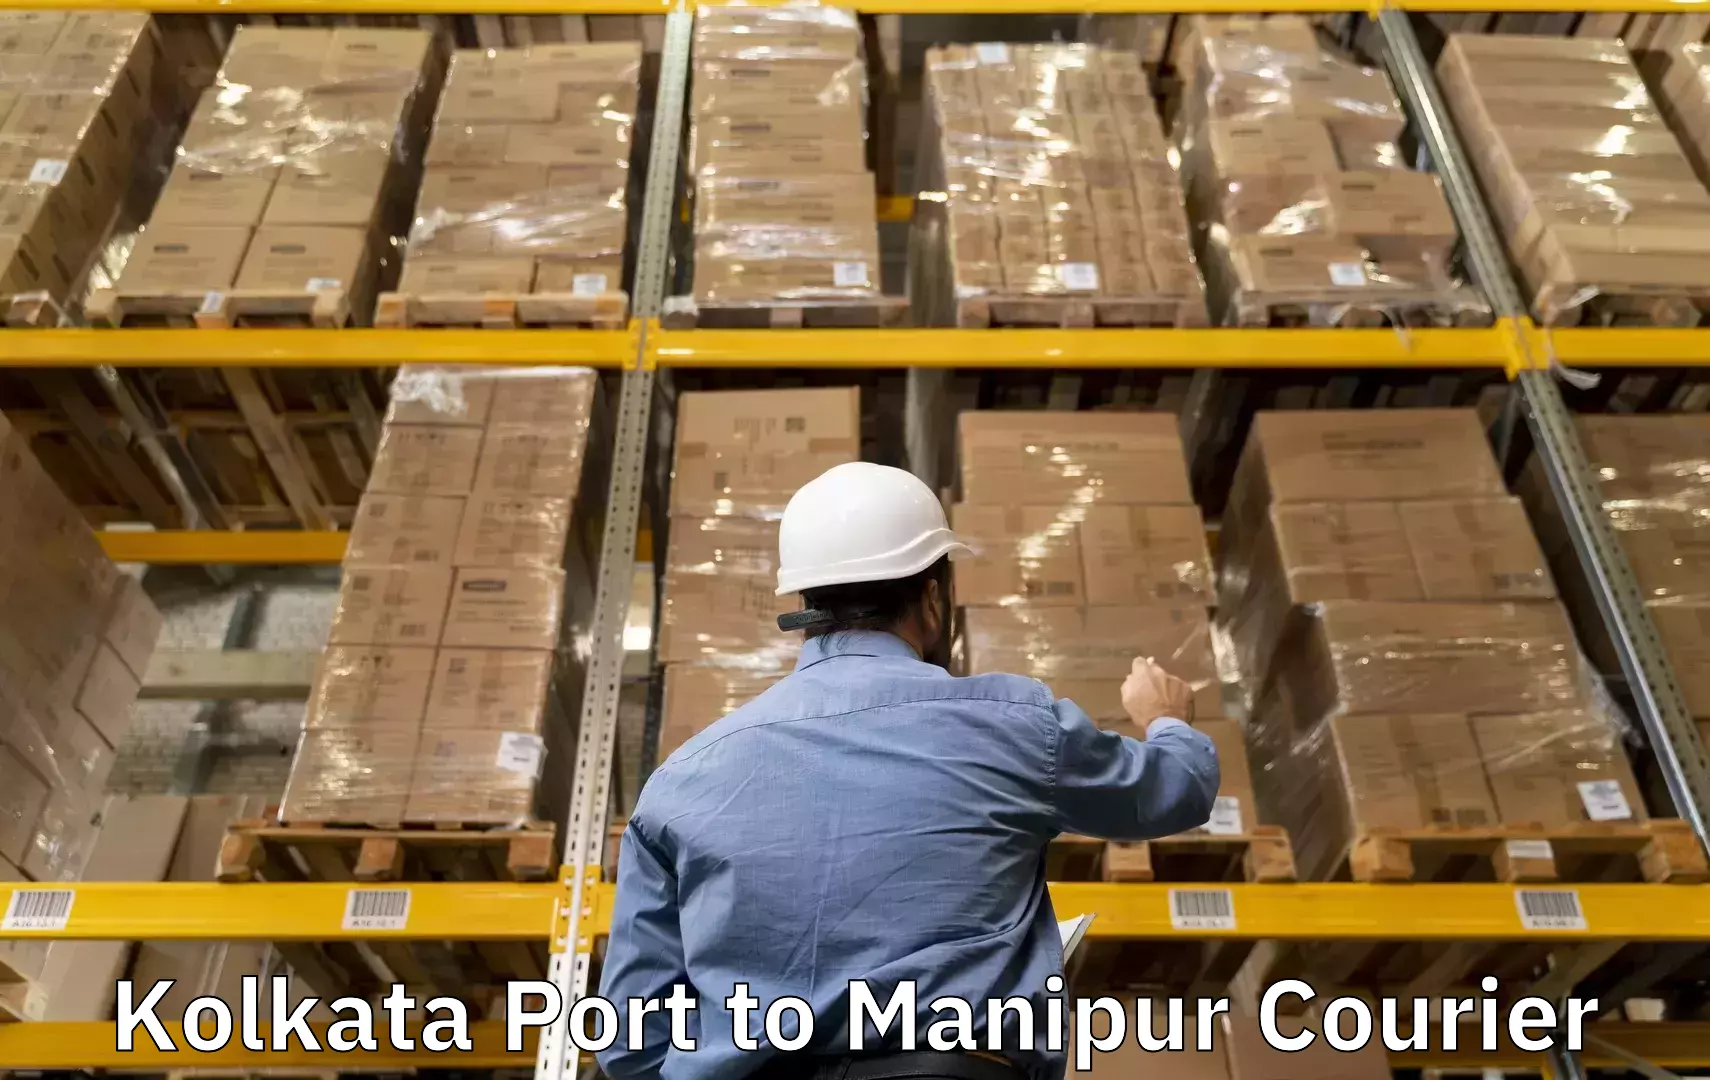 Baggage transport technology Kolkata Port to NIT Manipur